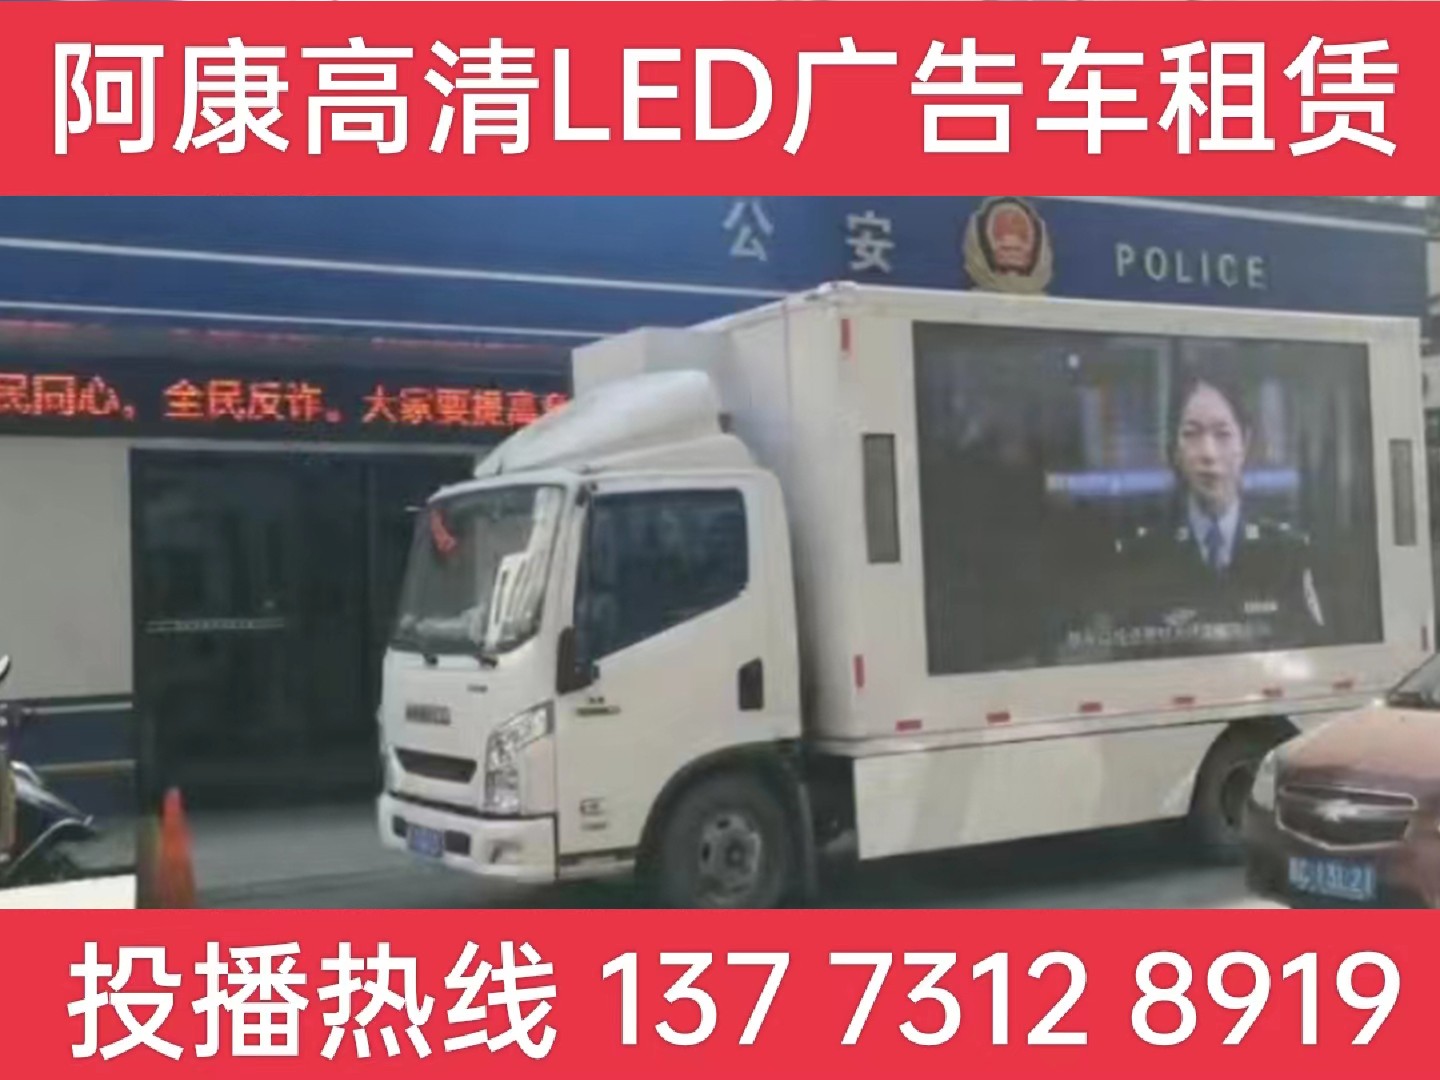 天长LED广告车租赁